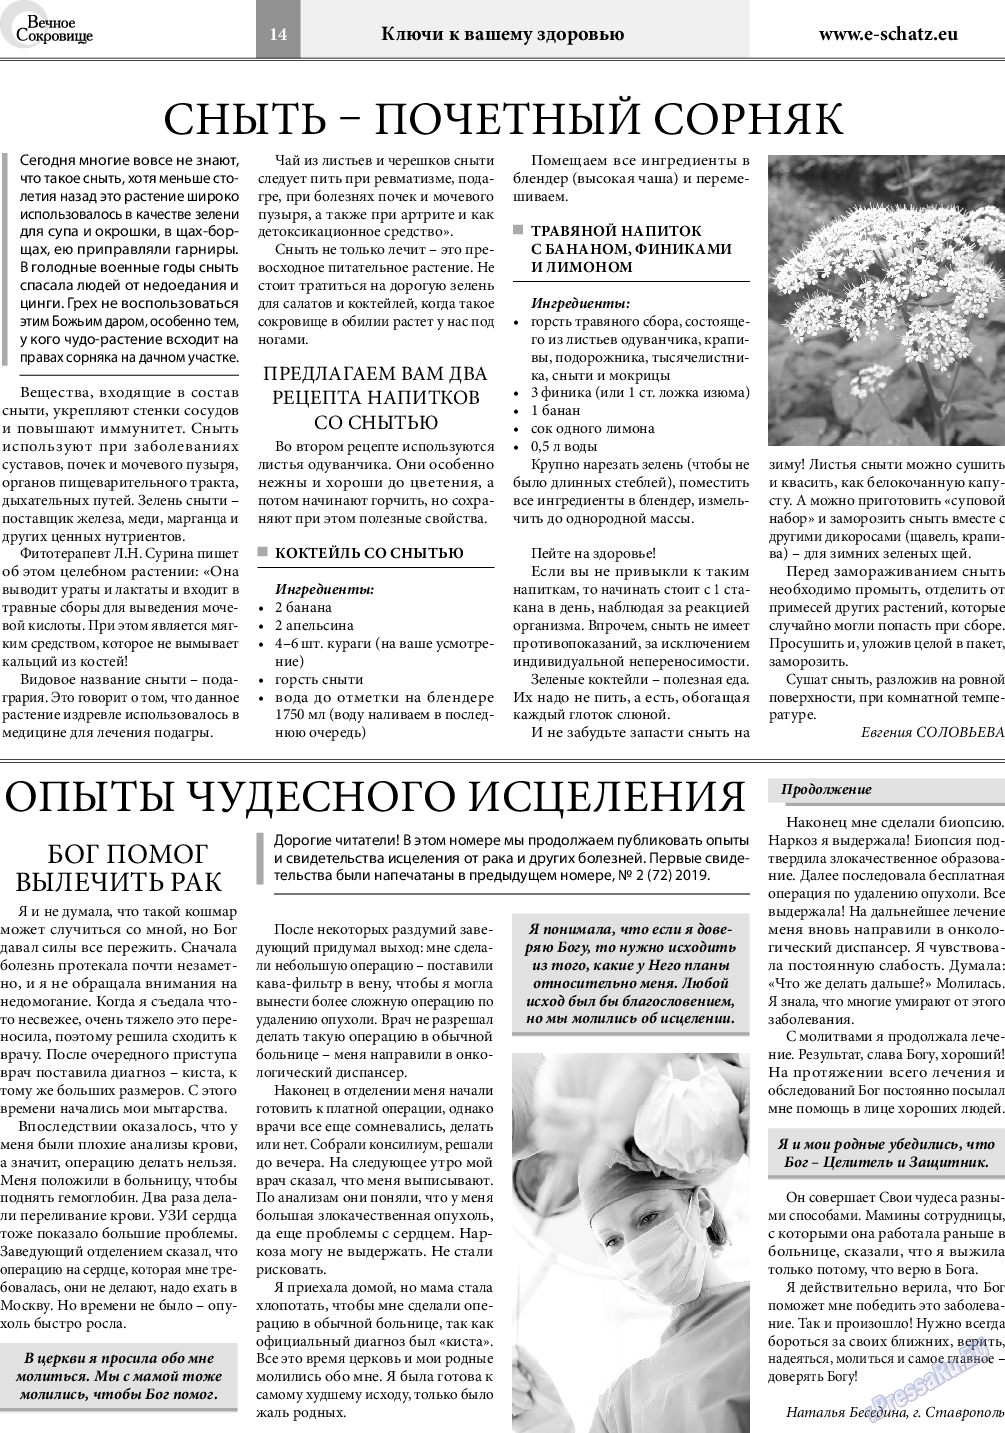 Вечное сокровище, газета. 2019 №3 стр.14